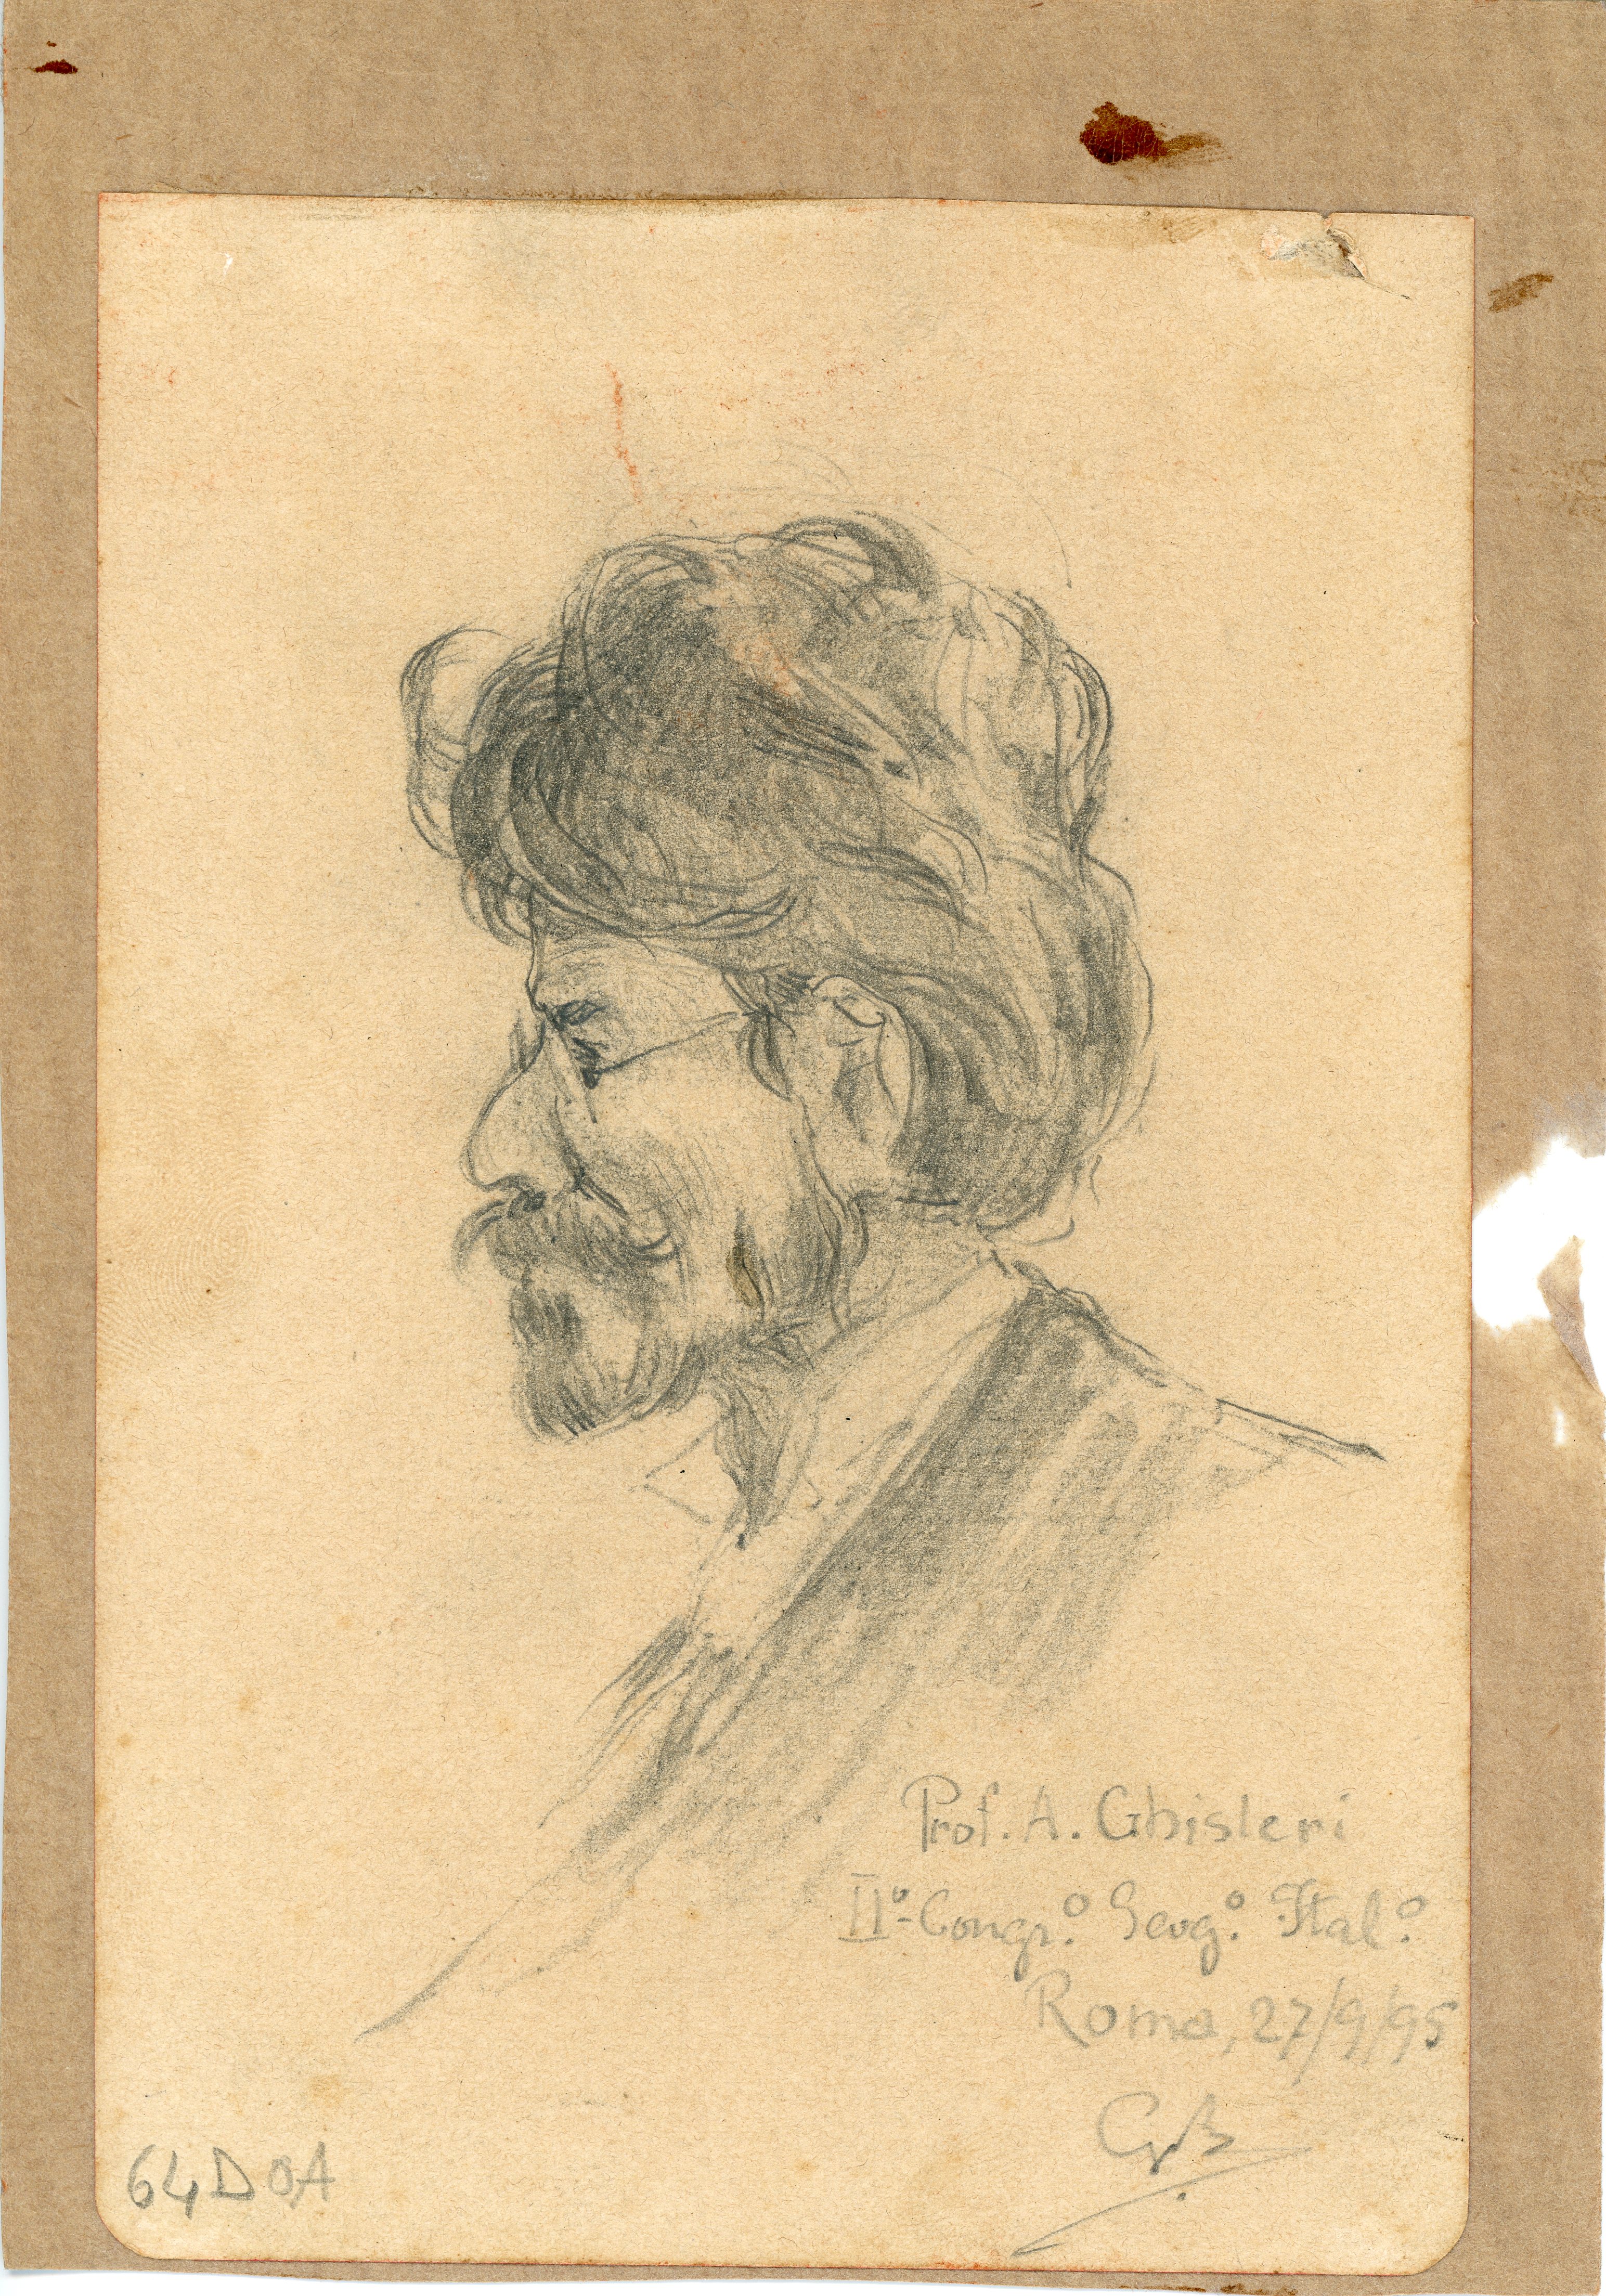 Prof A. Ghisleri, ritratto (disegno) di Boggiani, Guido - ambito Italia settentrionale (seconda metà XX)